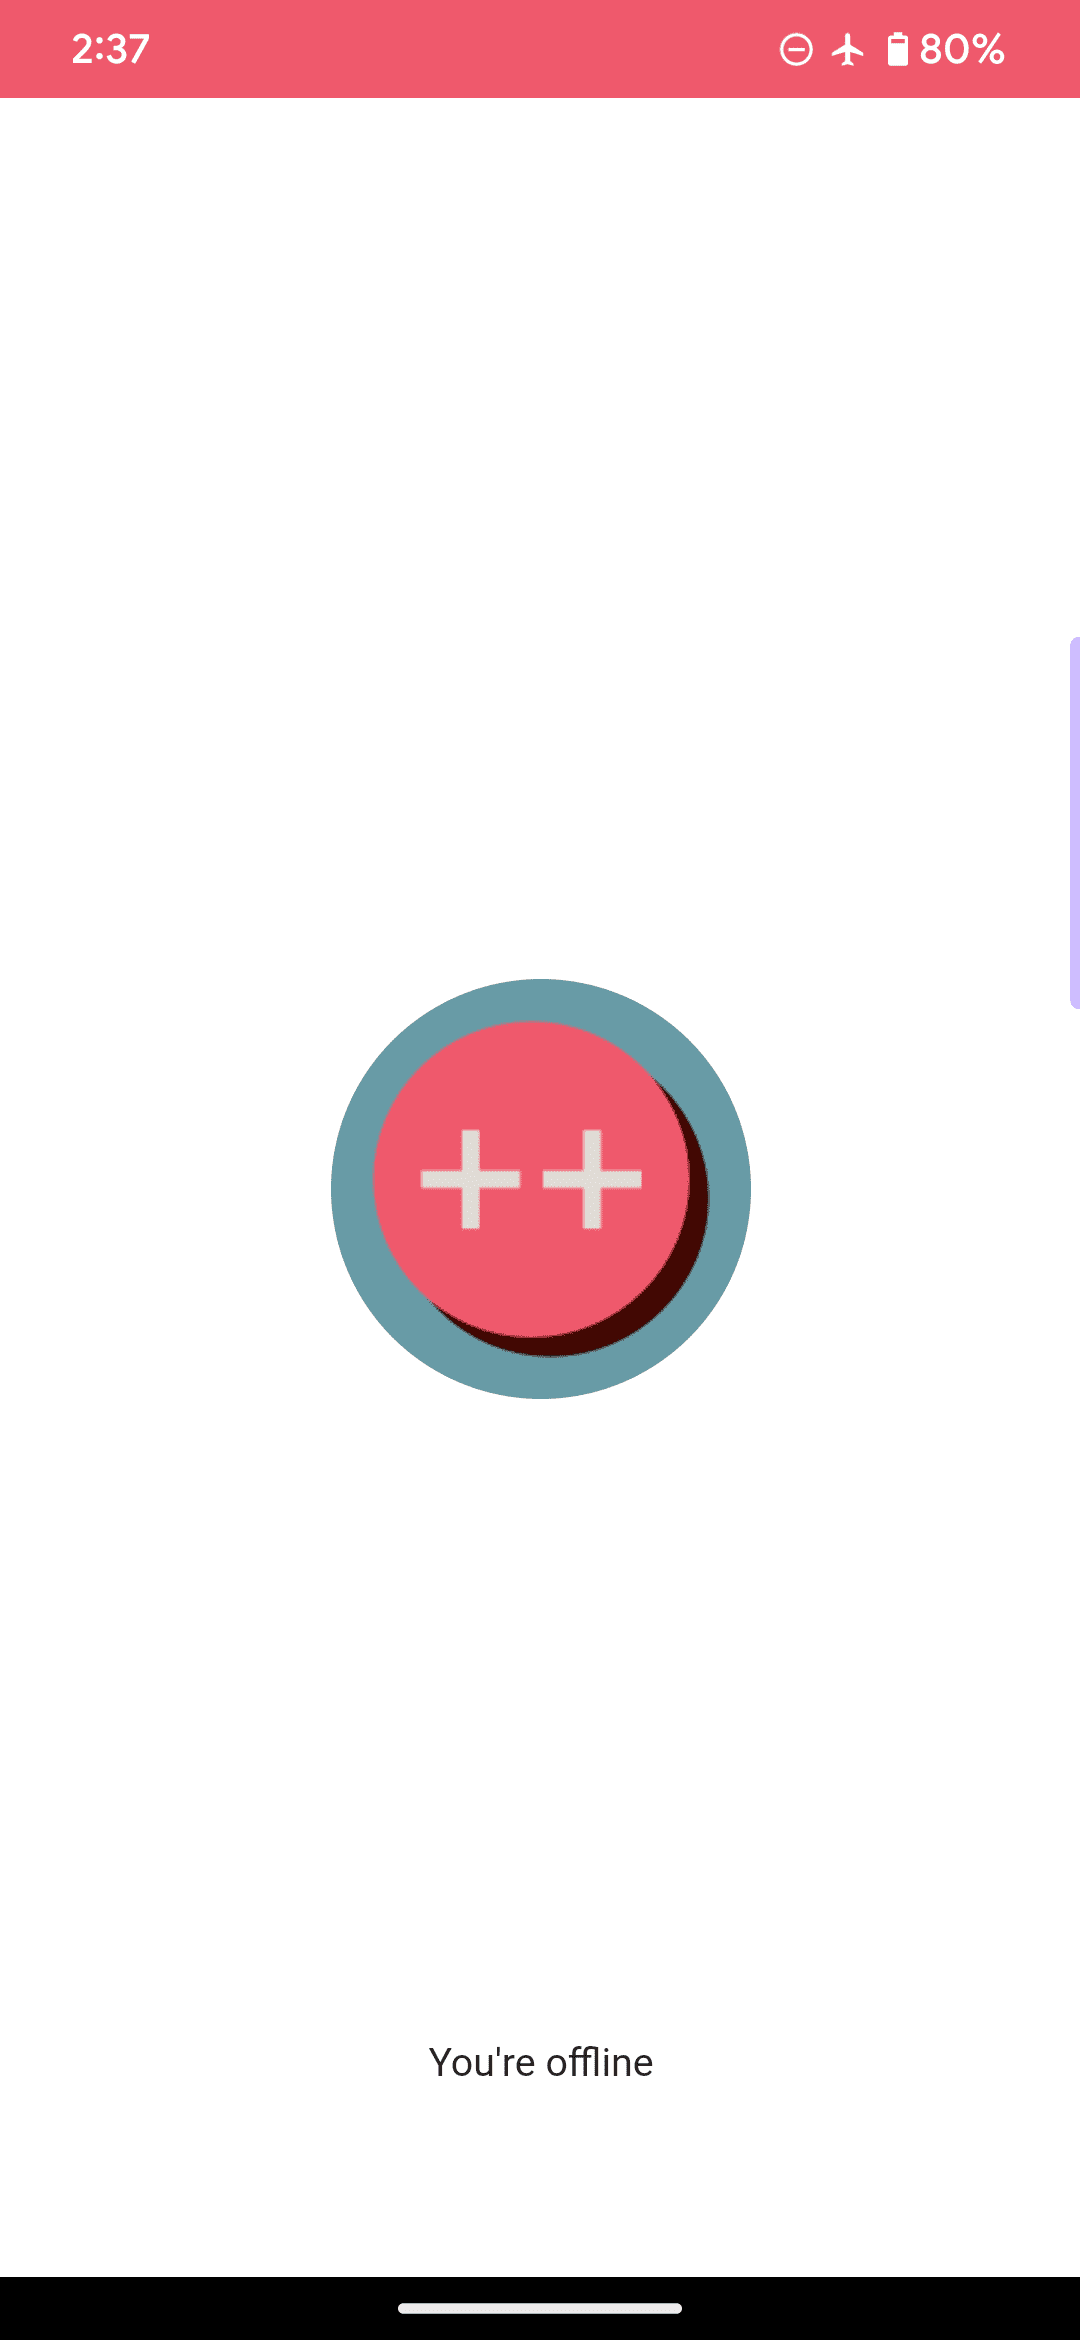 示例 Web 应用的默认离线页面，该页面的徽标为一个粉色圆圈和两个加号，并且包含消息“您处于离线状态”。